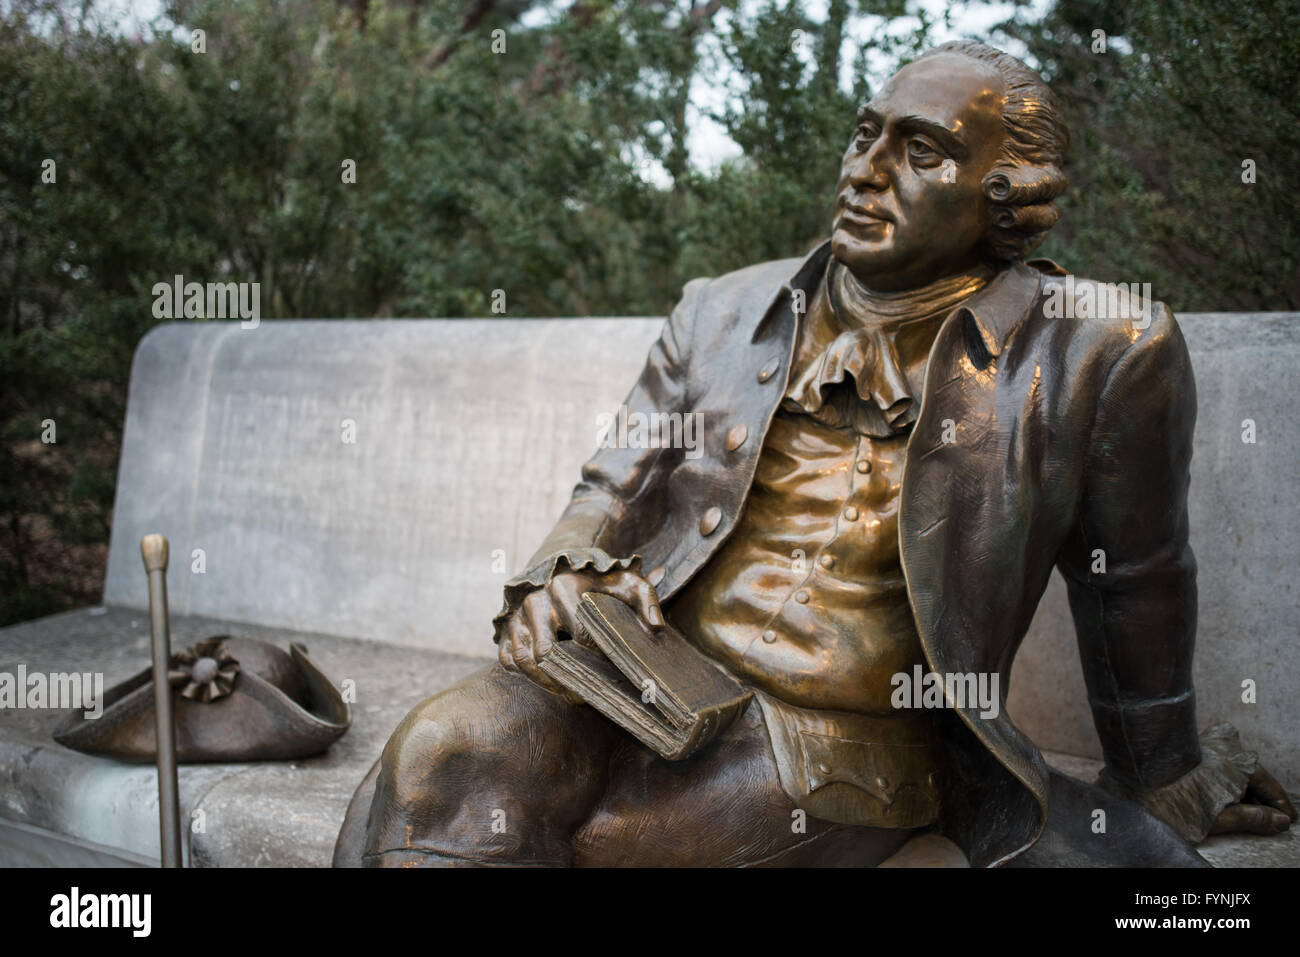 WASHINGTON DC, USA – die Statue von George Mason, die am George Mason Memorial, einem weniger bekannten, aber bedeutenden Denkmal in der Hauptstadt der Nation, beharrlich sitzt. Mason, ein einflussreicher Gründervater, wird für seine Urheberschaft der Virginia Declaration of Rights, einem grundlegenden Dokument, das die USA beeinflusste, verehrt "Bill of Rights". Stockfoto